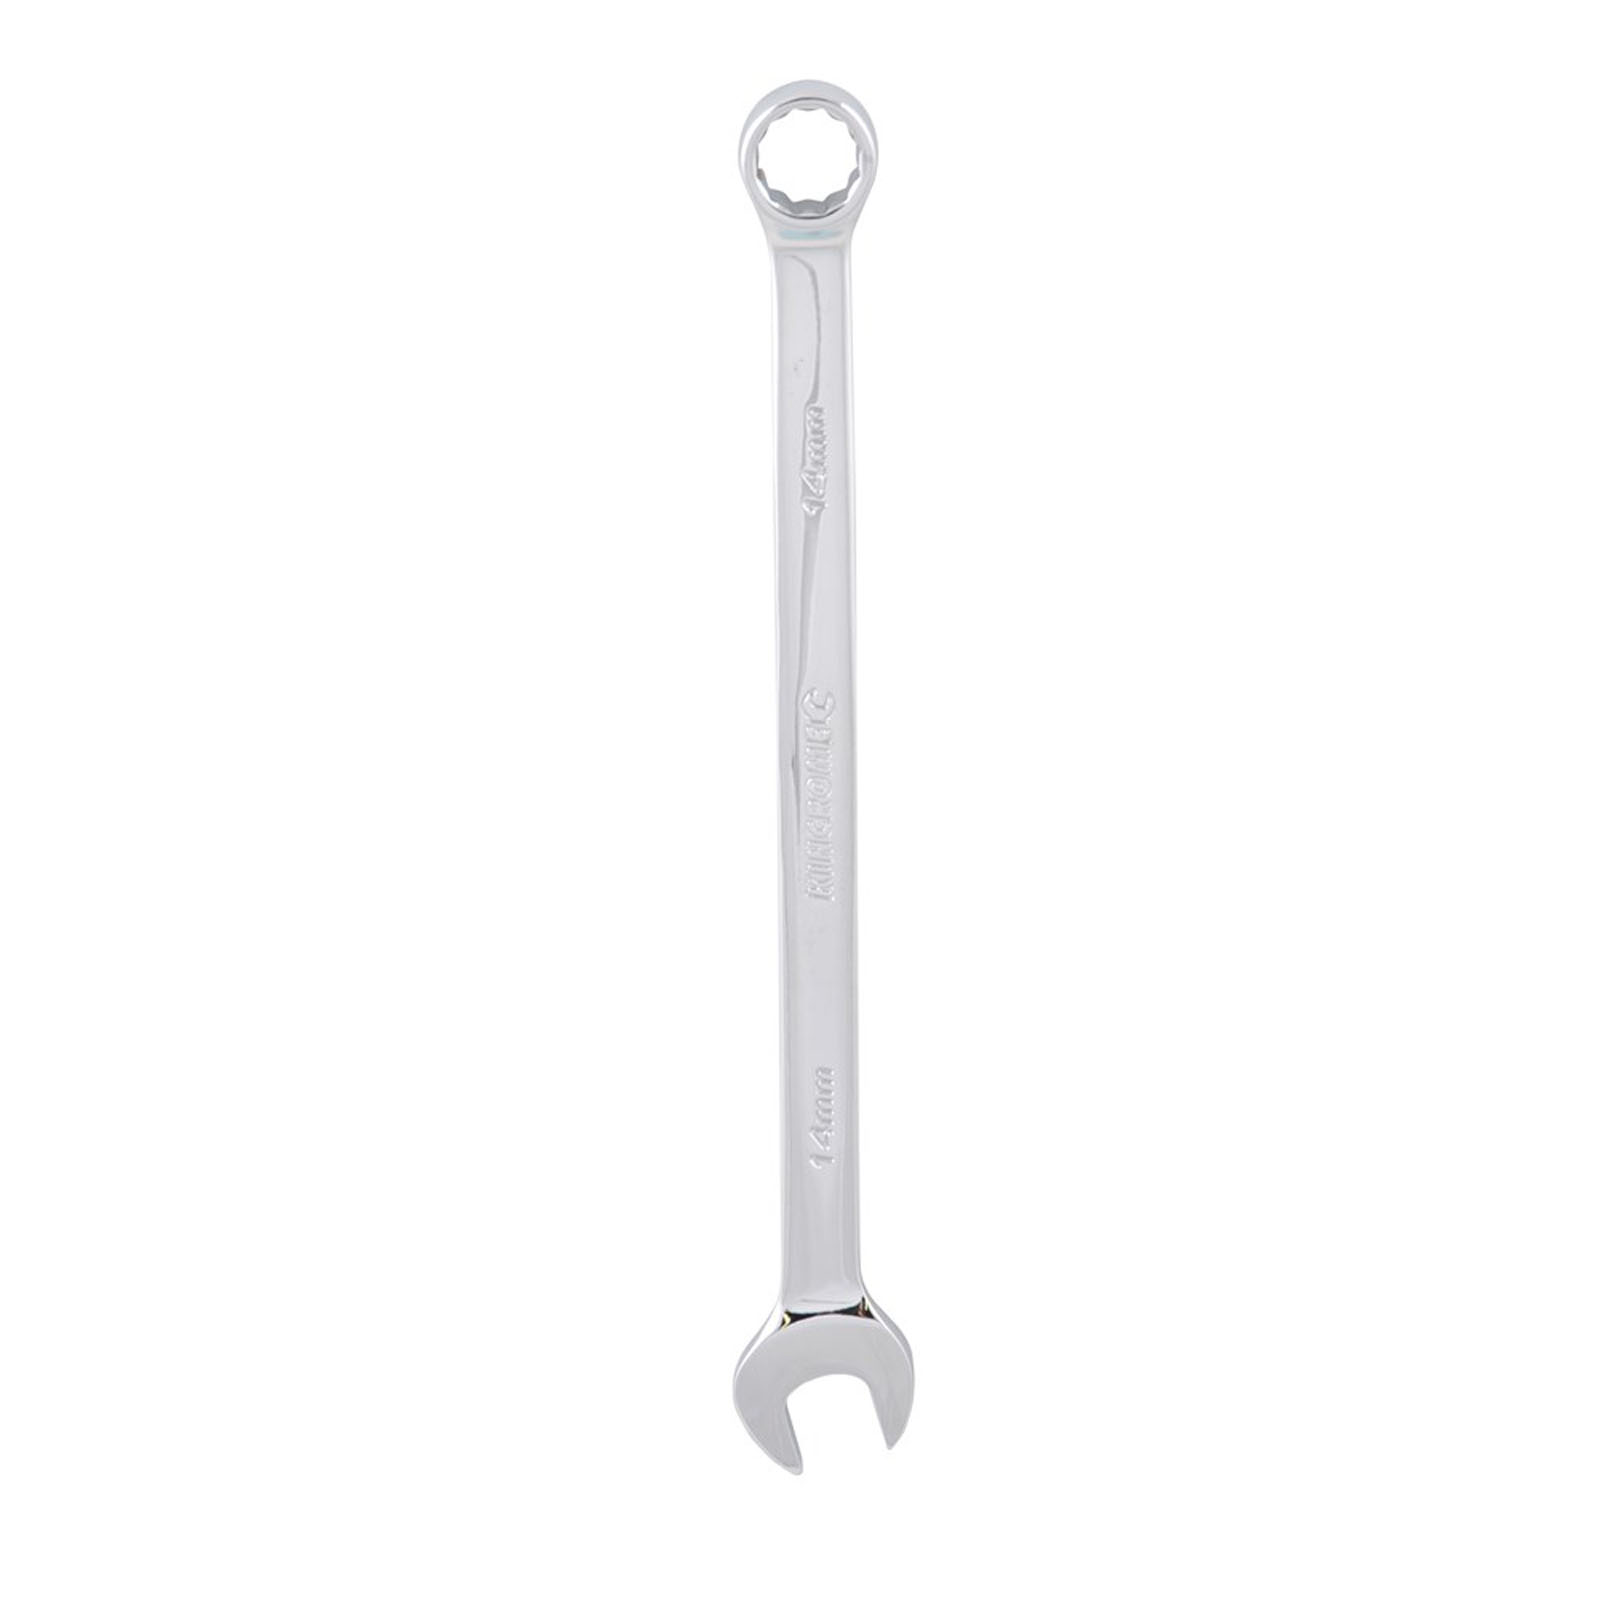 Mota herramientas 14 mm E14 Combination Wrench Silver | Bricoinn